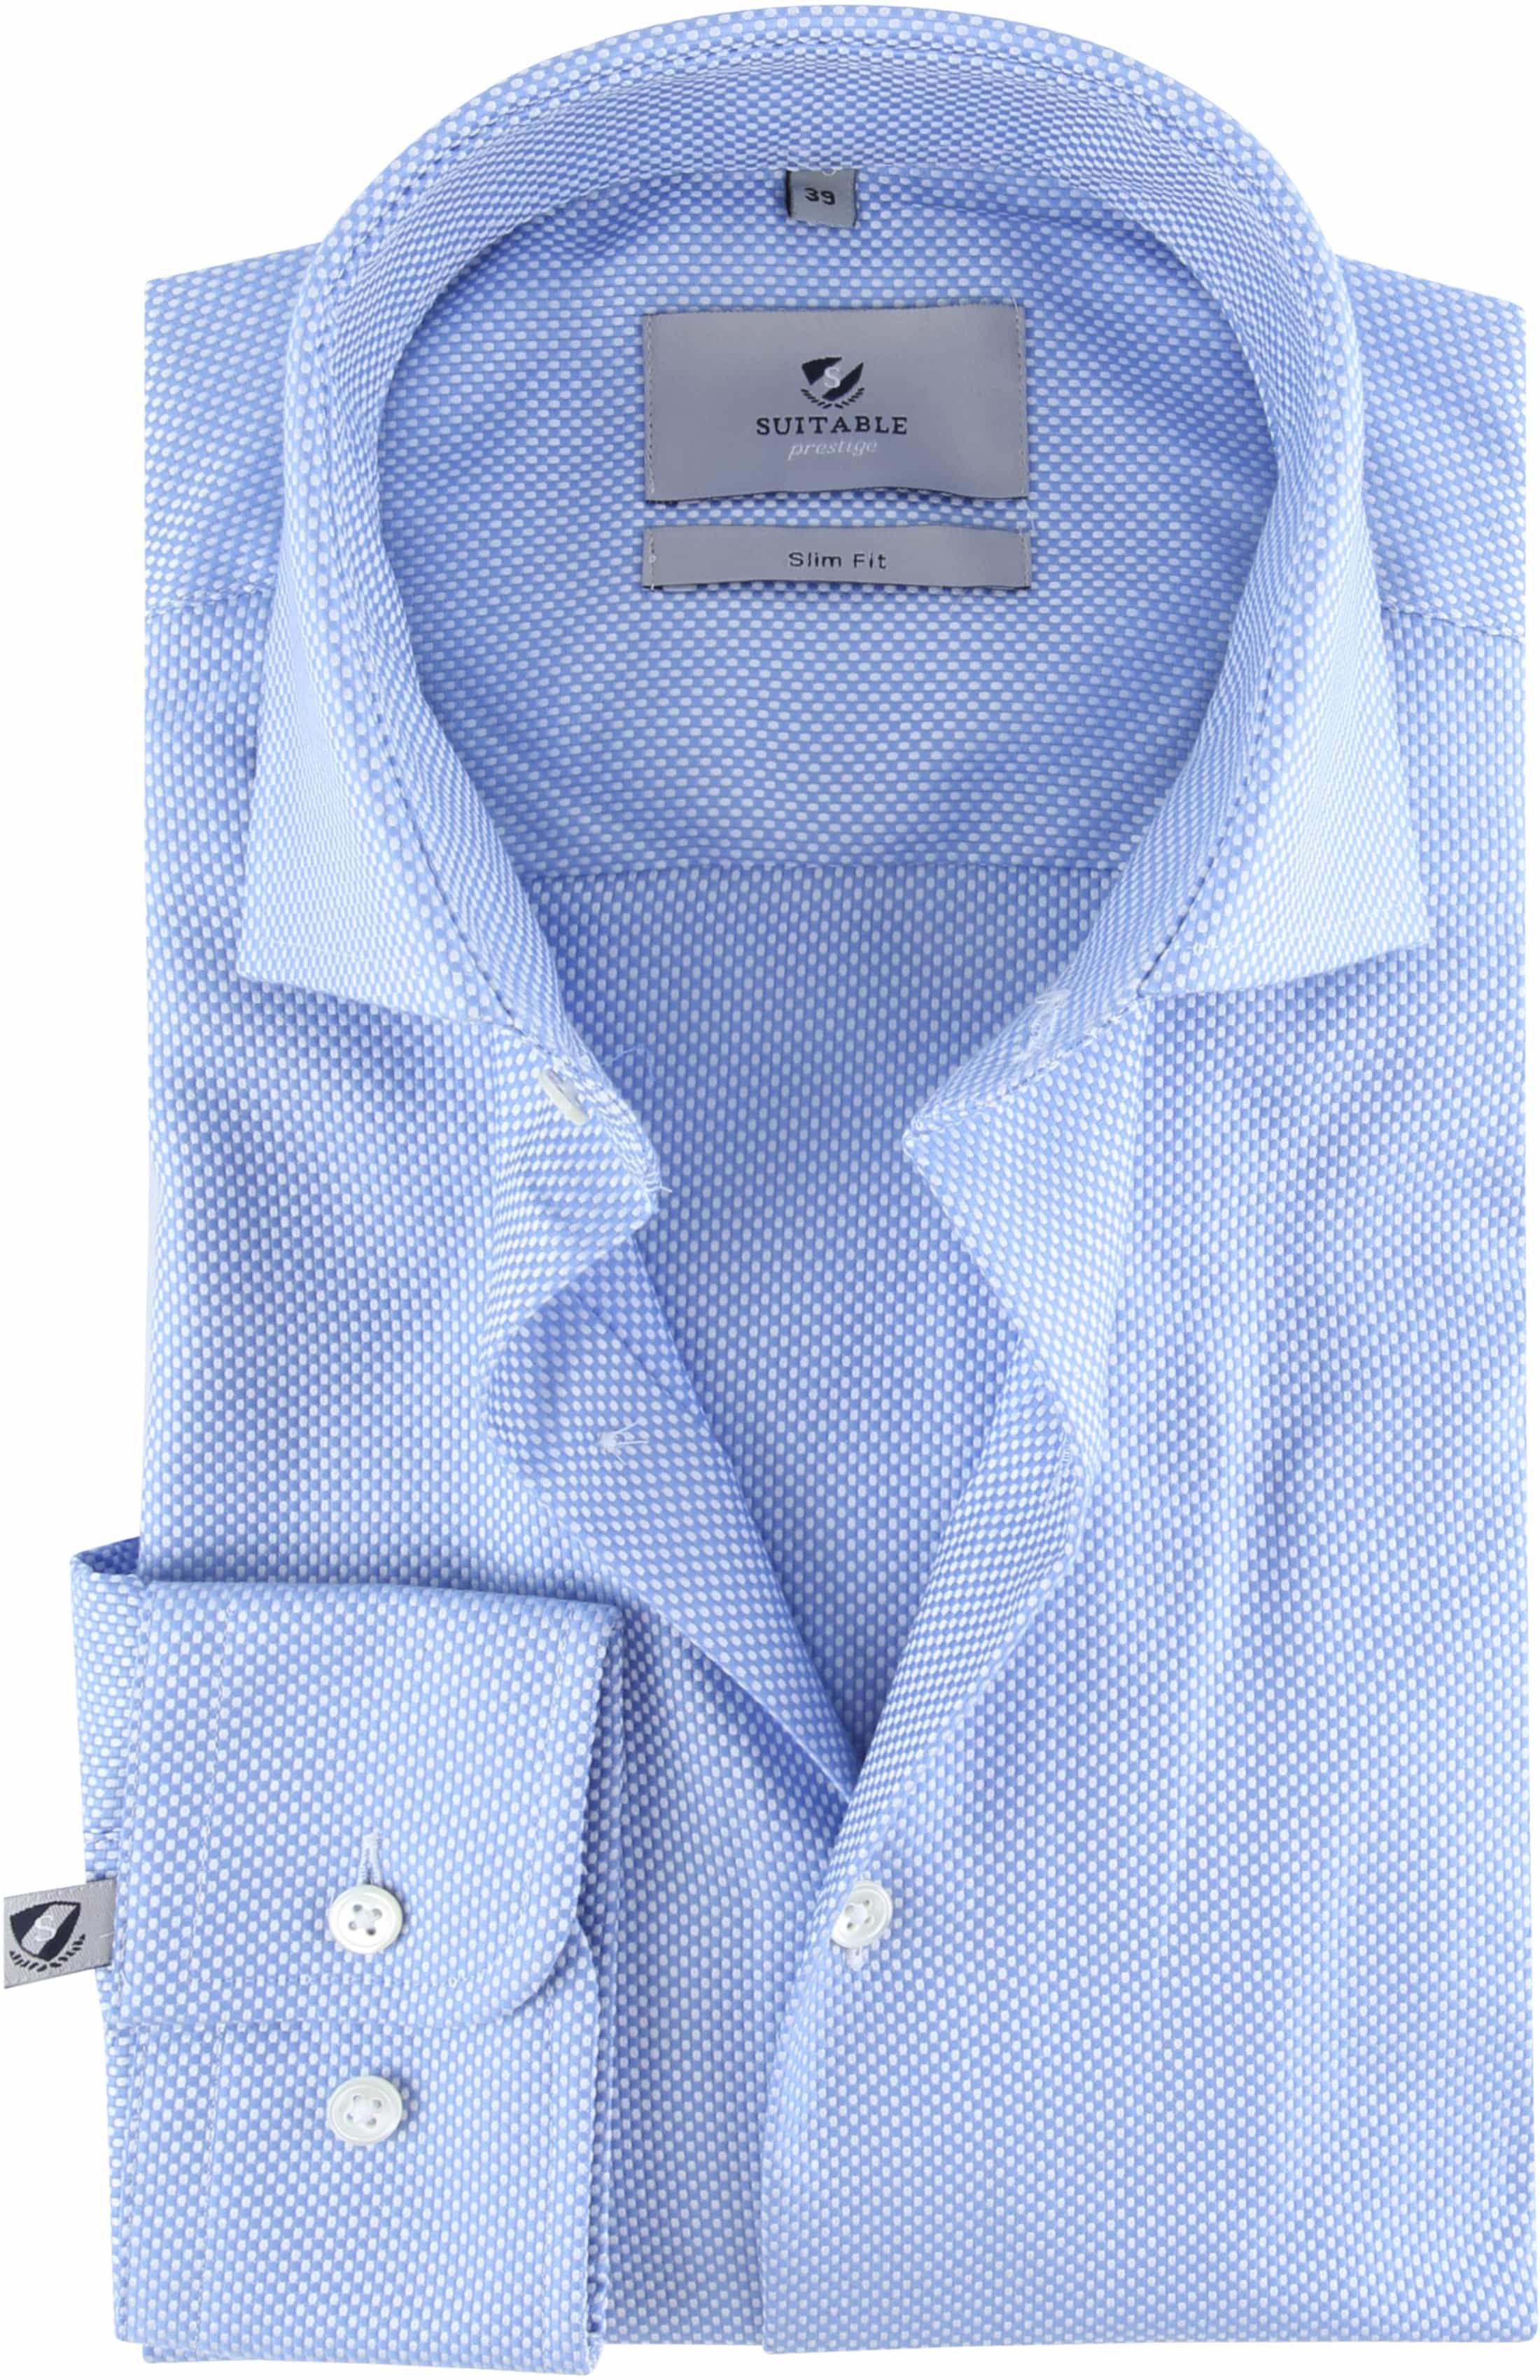 Suitable Prestige Shirt Albini Blue size 15 3/4